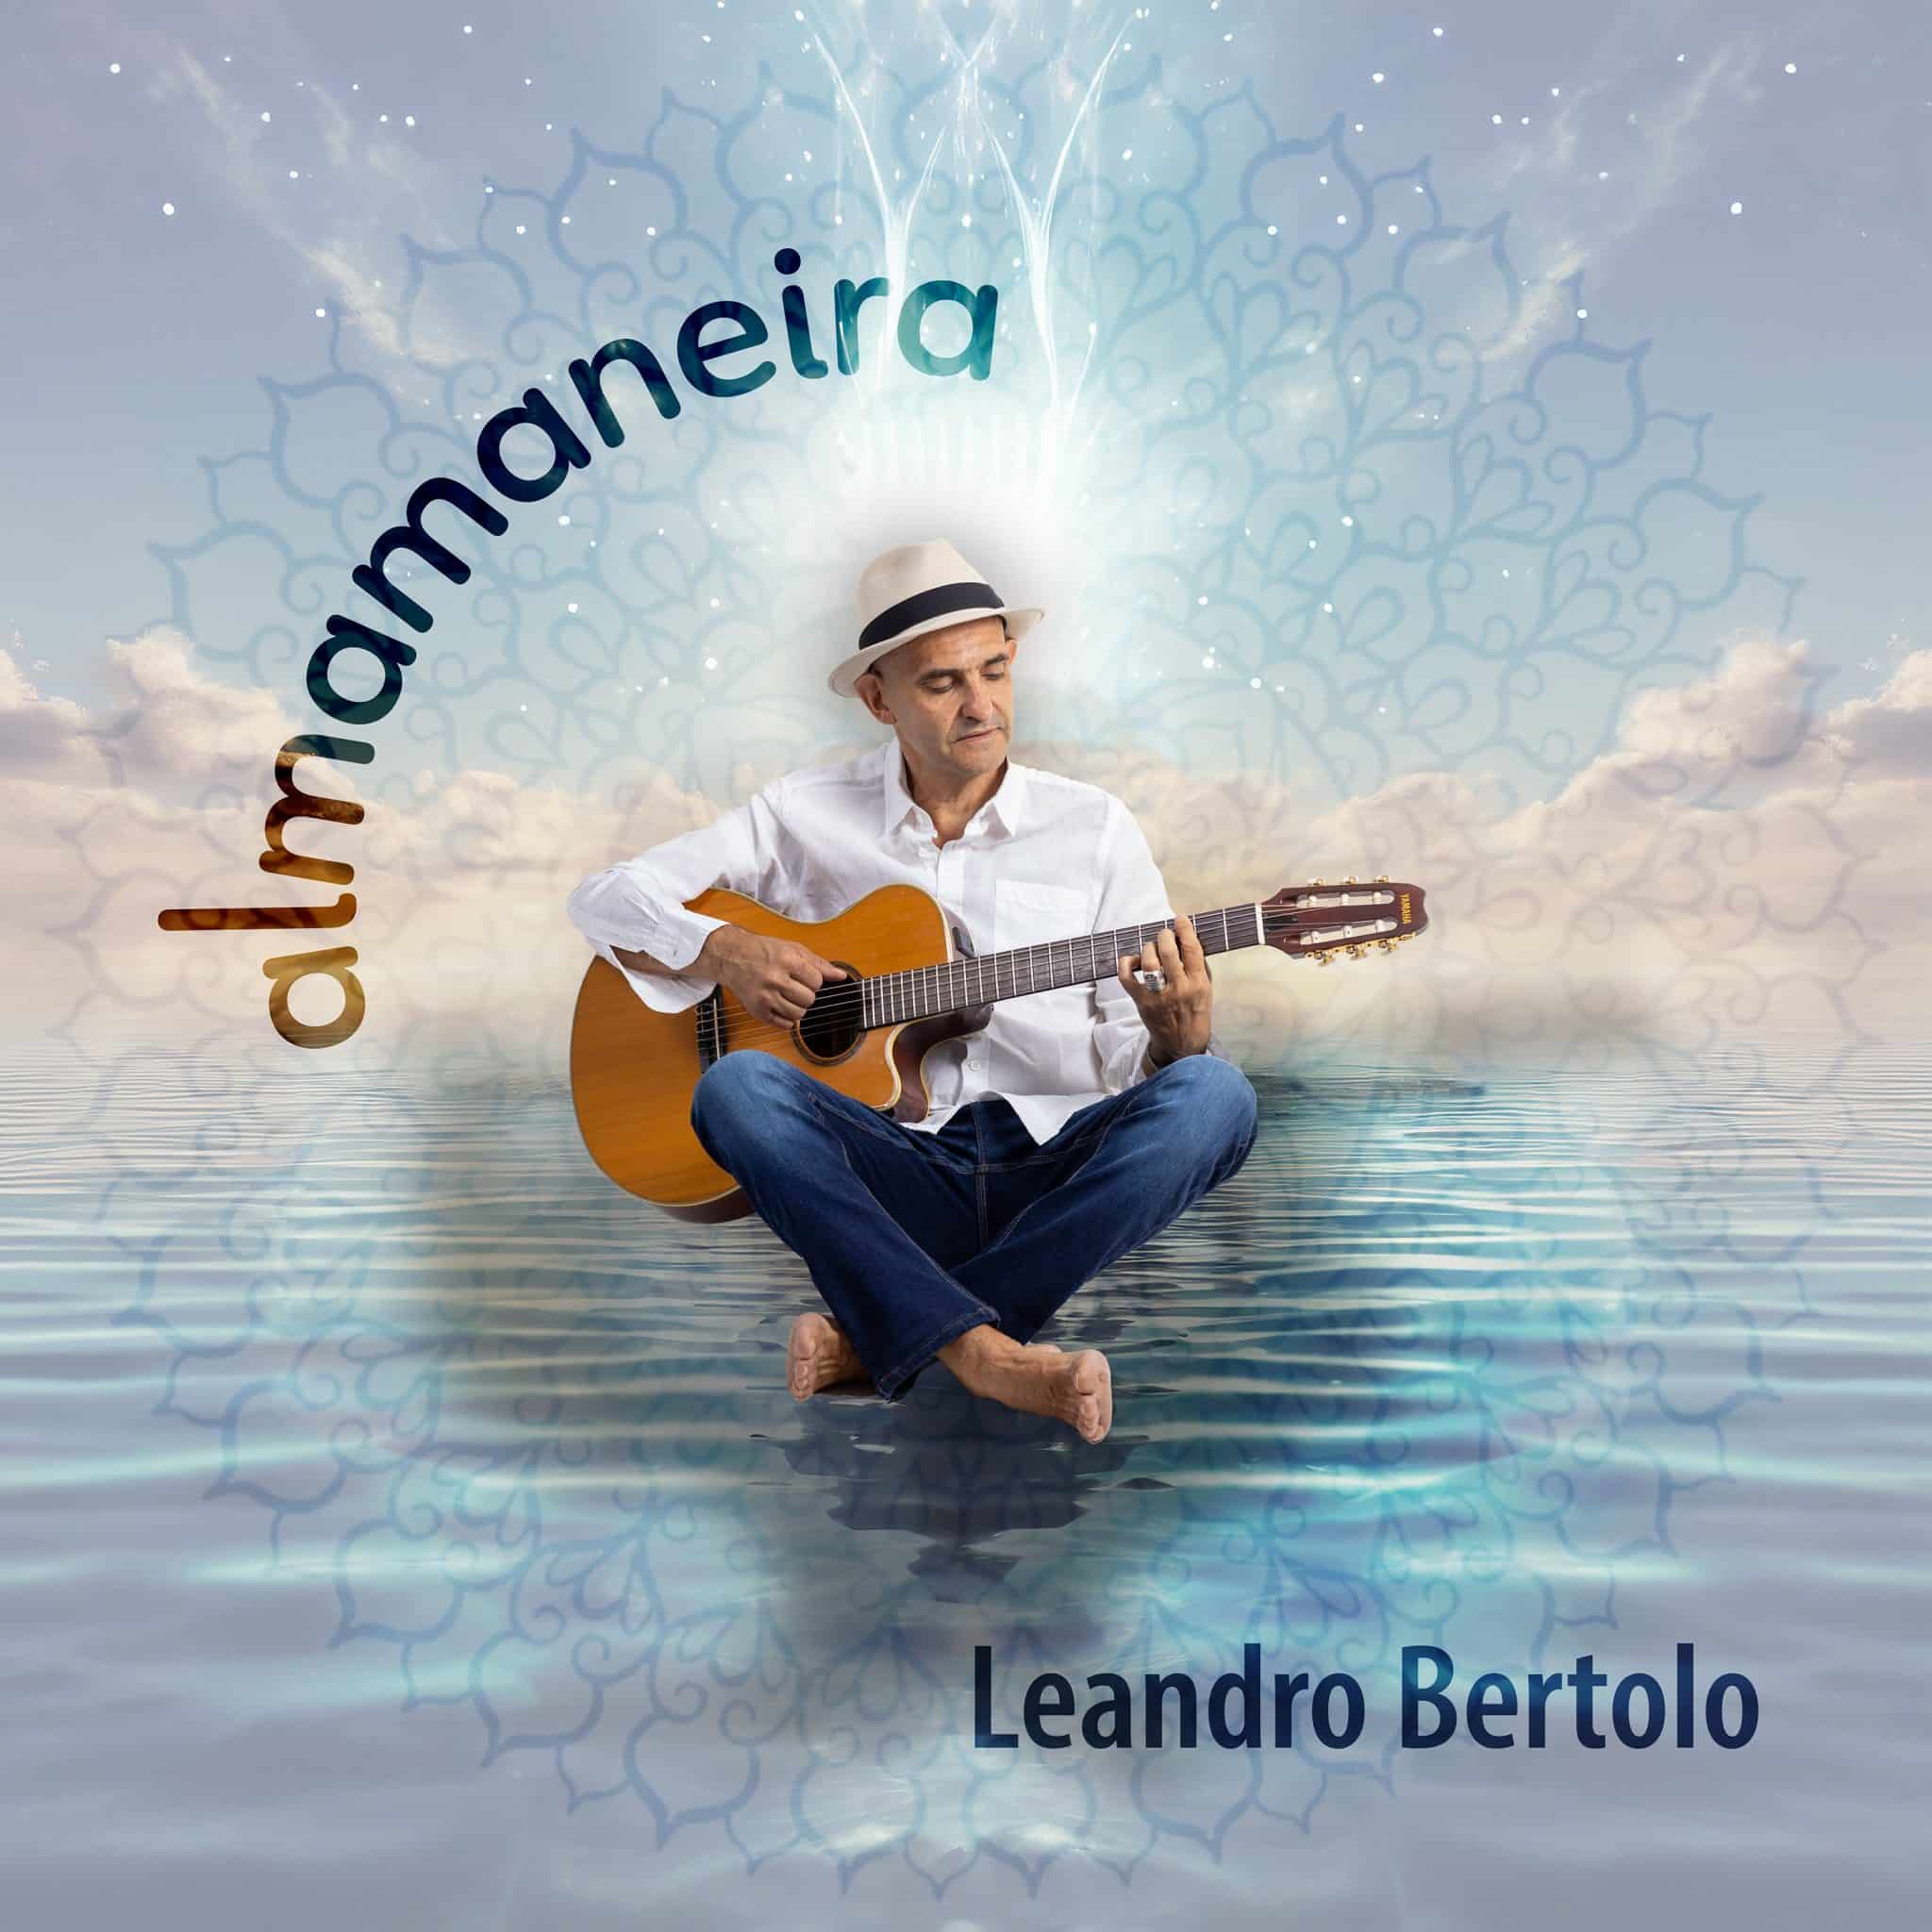 revistaprosaversoearte.com - Leandro Bertolo lança 'Almamaneira', seu terceiro álbum, com produção de Kleiton Ramil